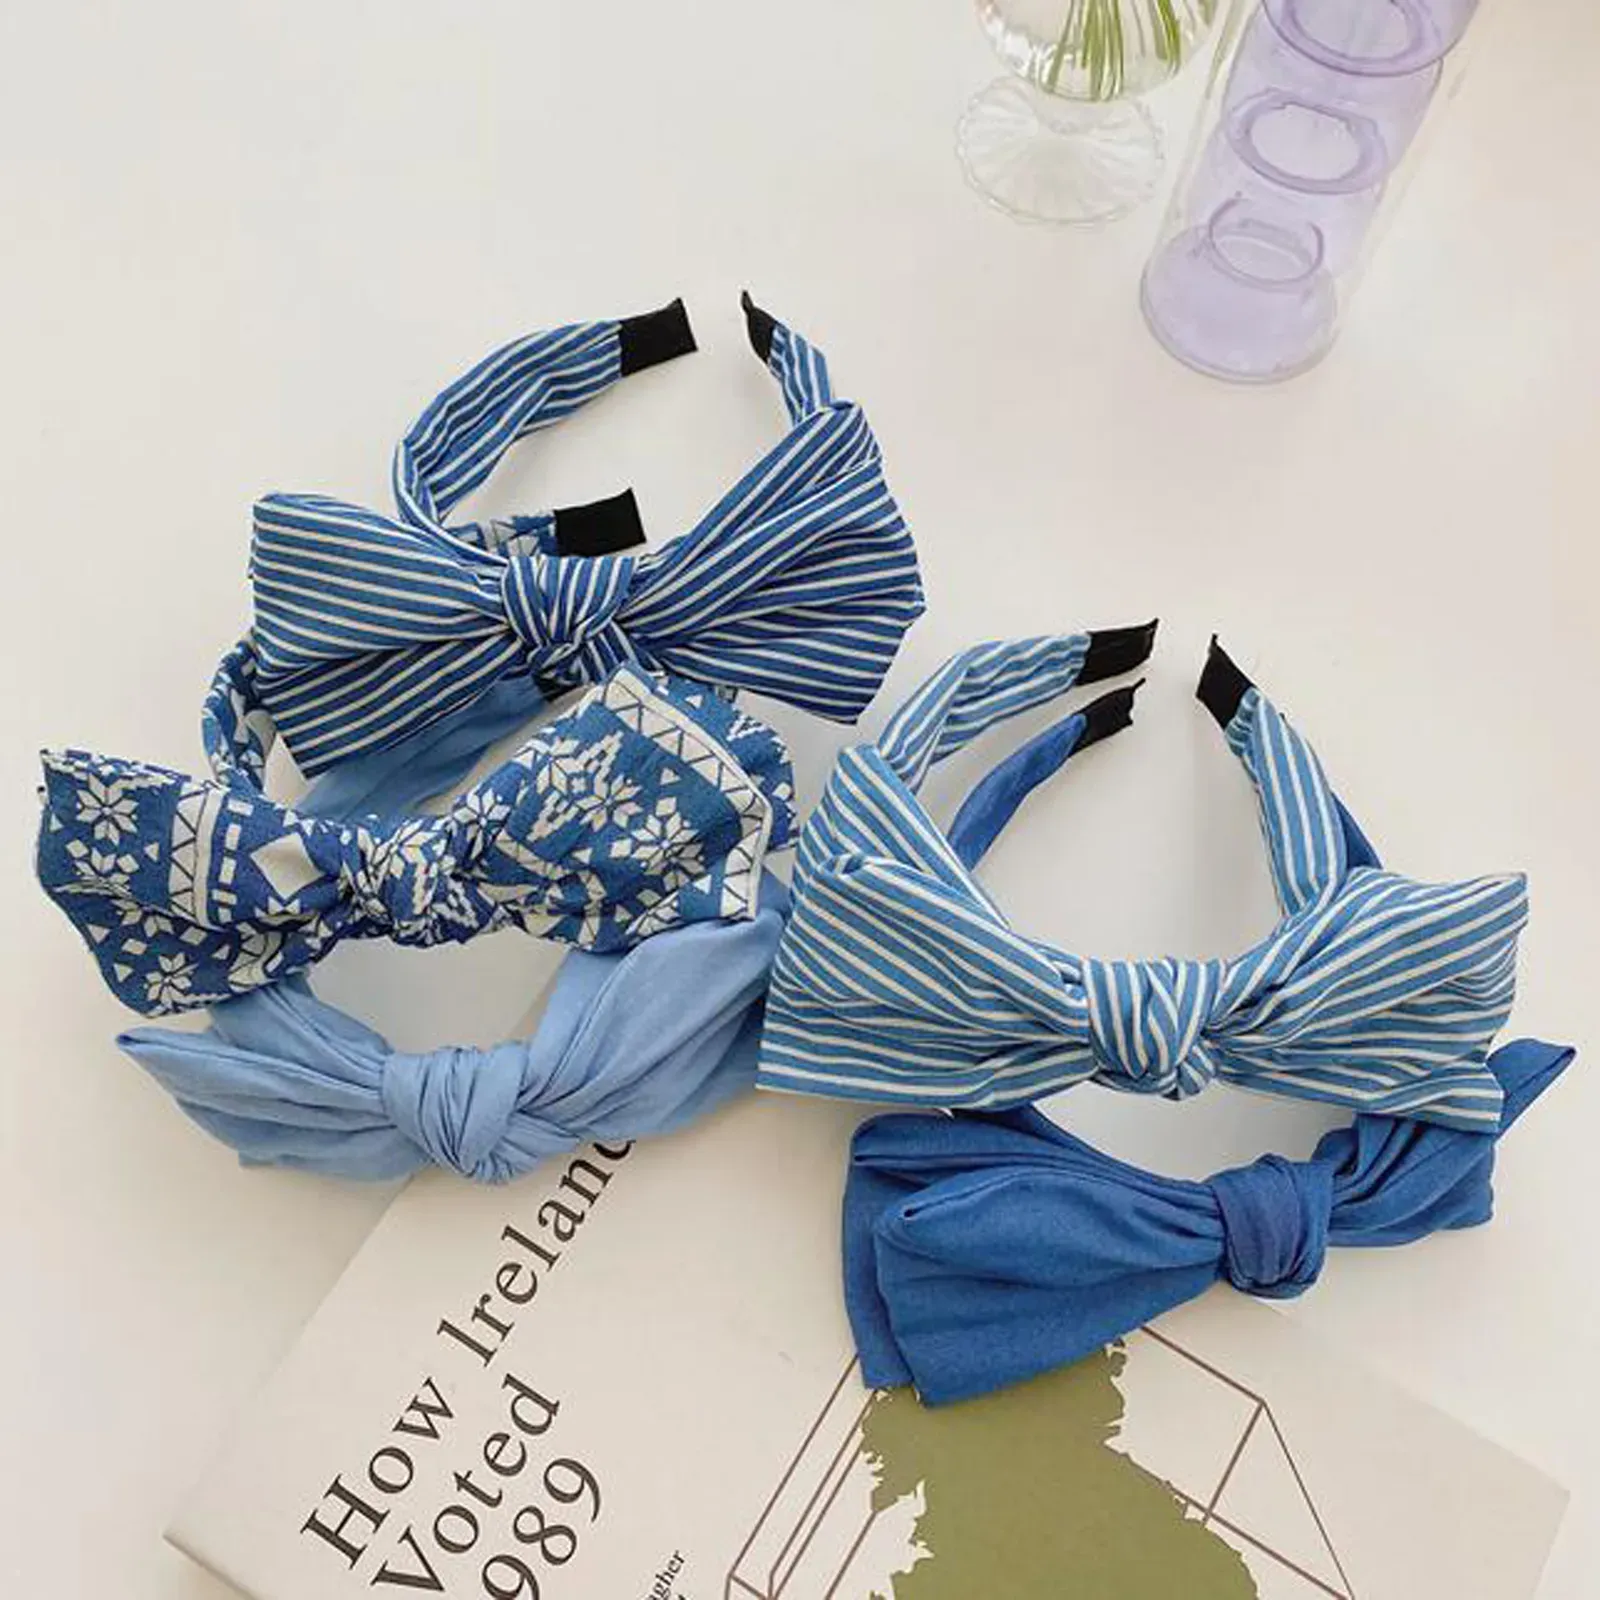 Neue Art- und Weisefrauen-Haar-Zusatz-blaues Denim-Stirnband-großer Bogen-Knoten-Haarband-Sommer-Turban für erwachsenes Headwear hipl832